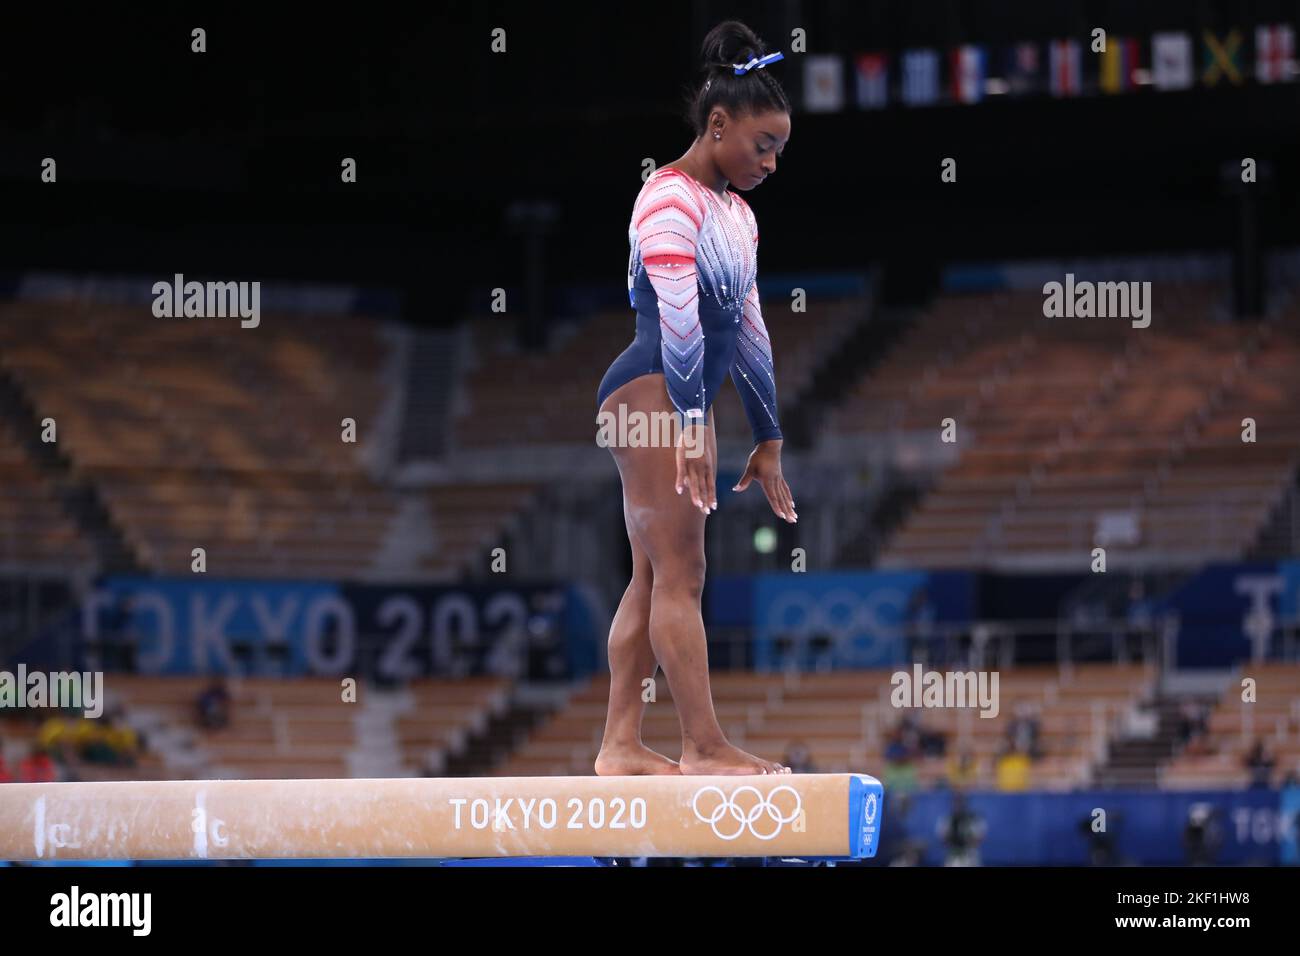 03rd AGOSTO 2021 - TOKYO, GIAPPONE: Simone BILES degli Stati Uniti si esibisce al fascio di equilibrio femminile durante le finali degli apparati di ginnastica artistica ai Giochi Olimpici di Tokyo 2020 (Foto di Mickael Chavet/RX) Foto Stock